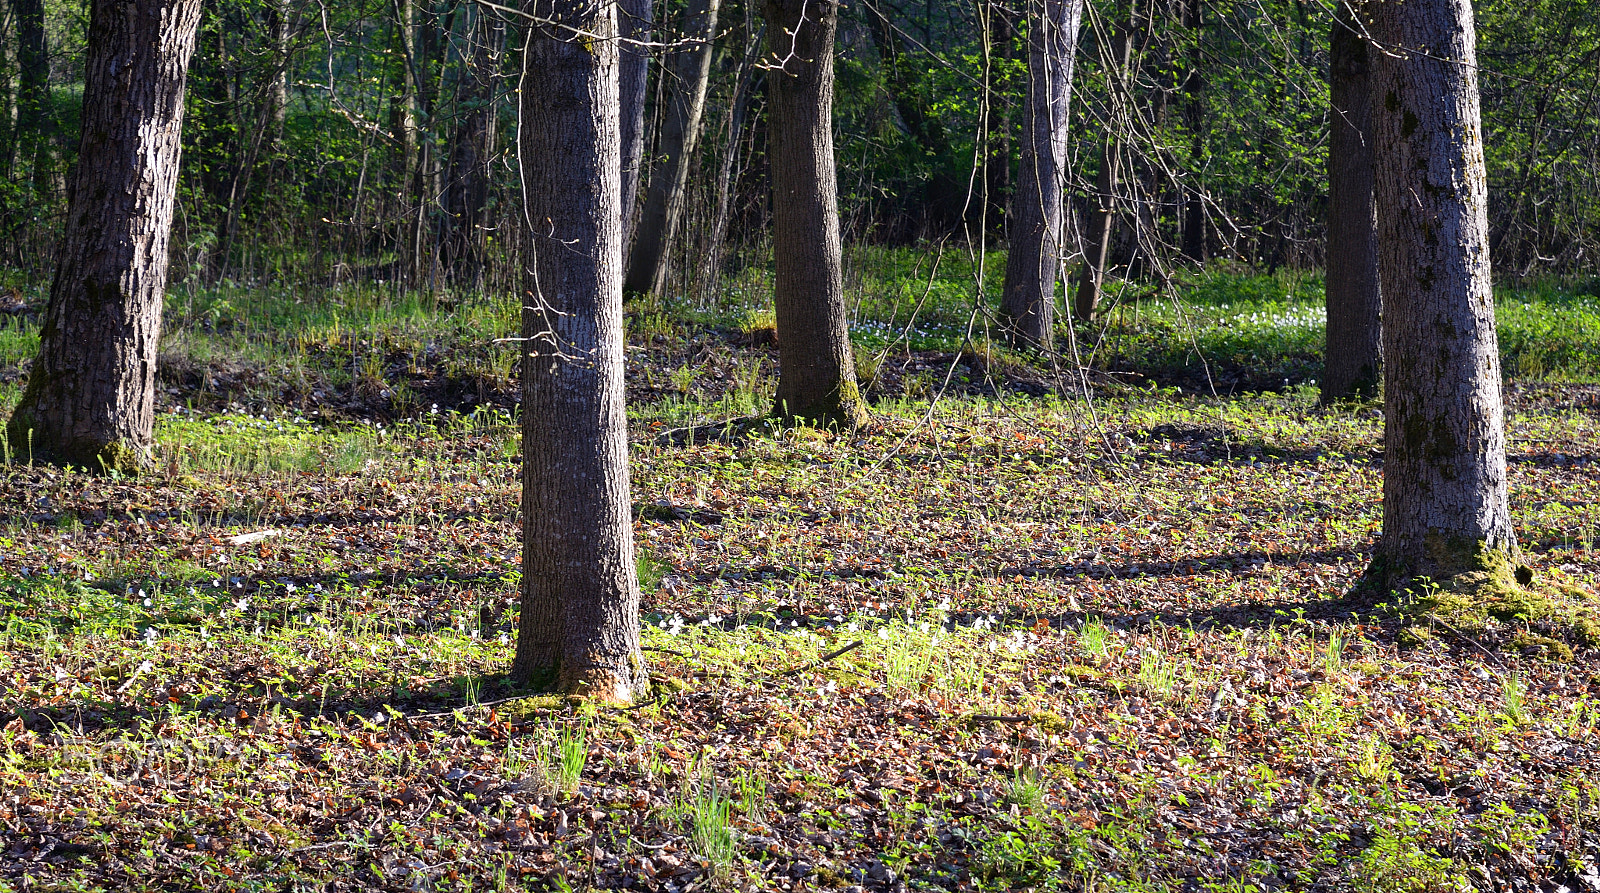 Nikon D610 + Nikon AF-S Nikkor 24-85mm F3.5-4.5G ED VR sample photo. Landscape in forest at spring. photography